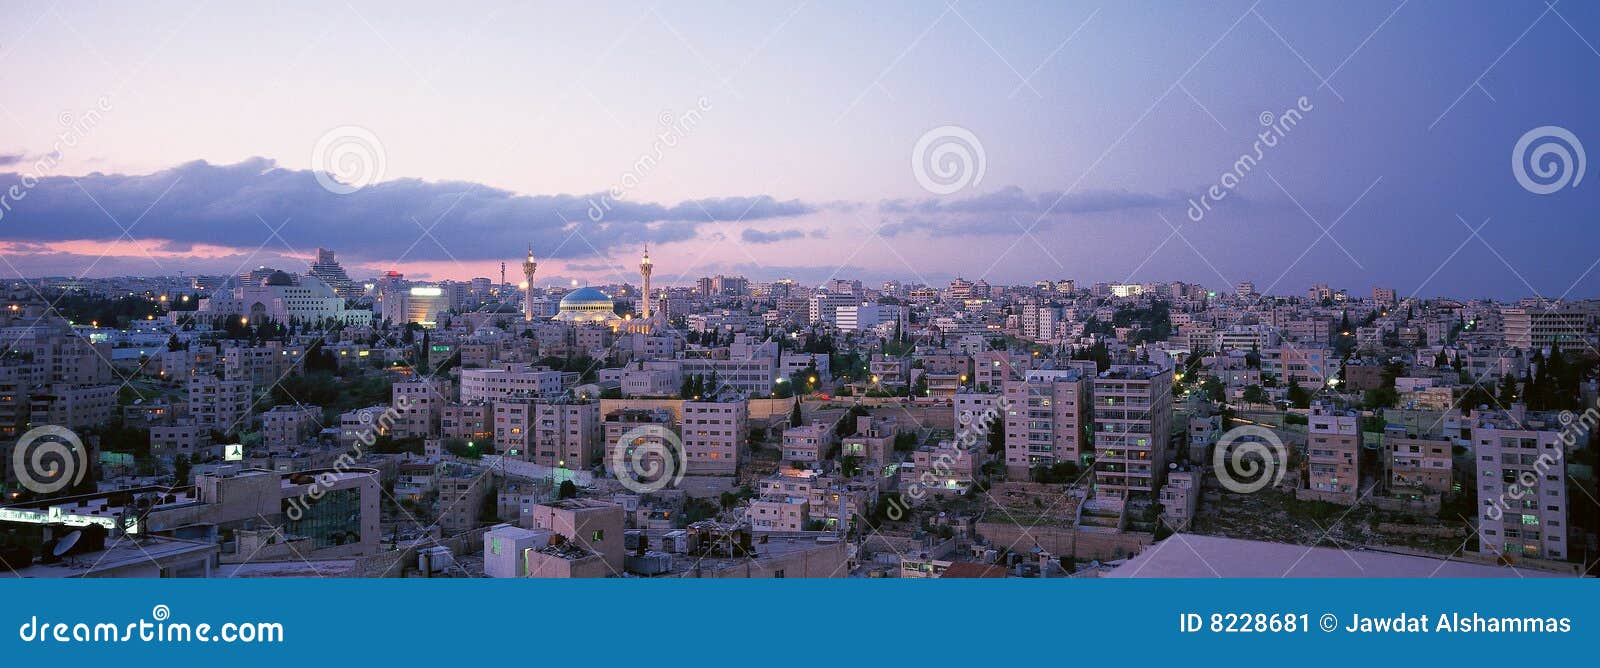 Amman City Background stock image. Image of amman, background - 8228681